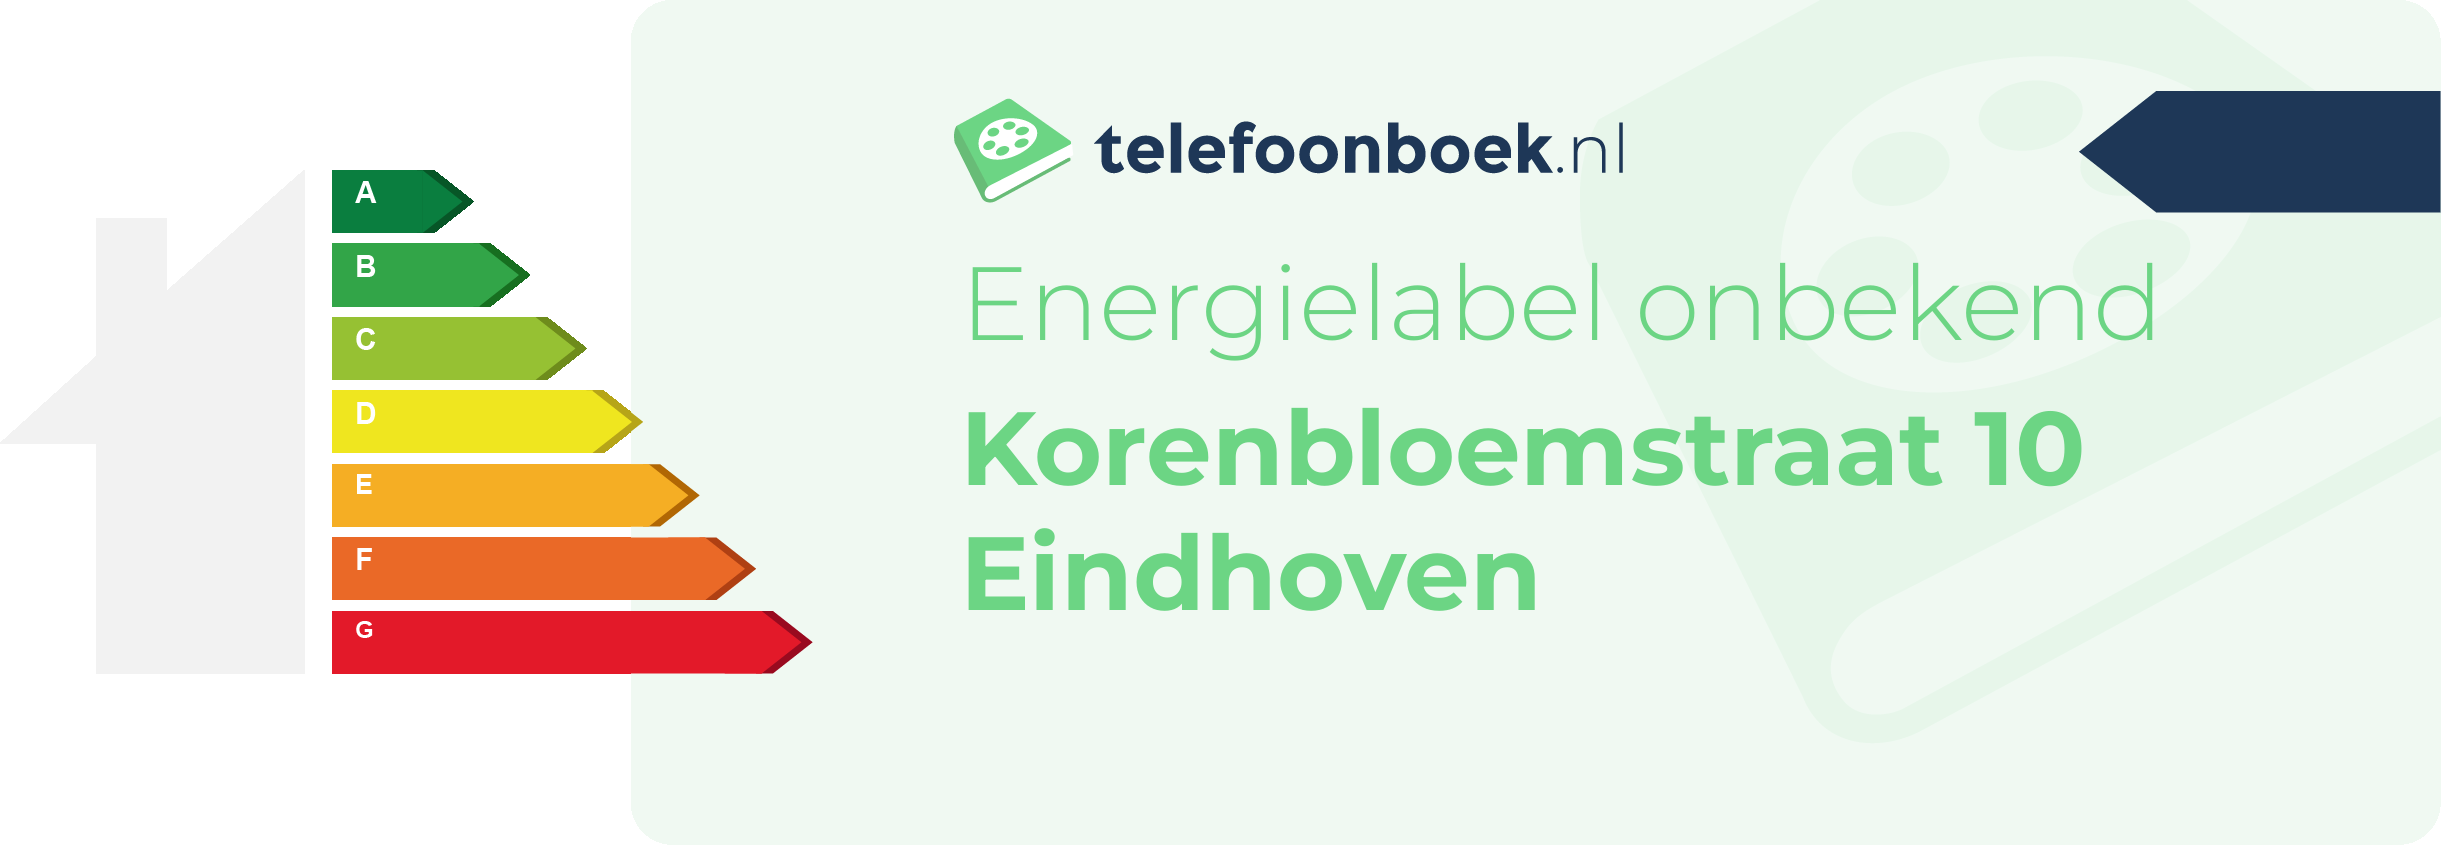 Energielabel Korenbloemstraat 10 Eindhoven